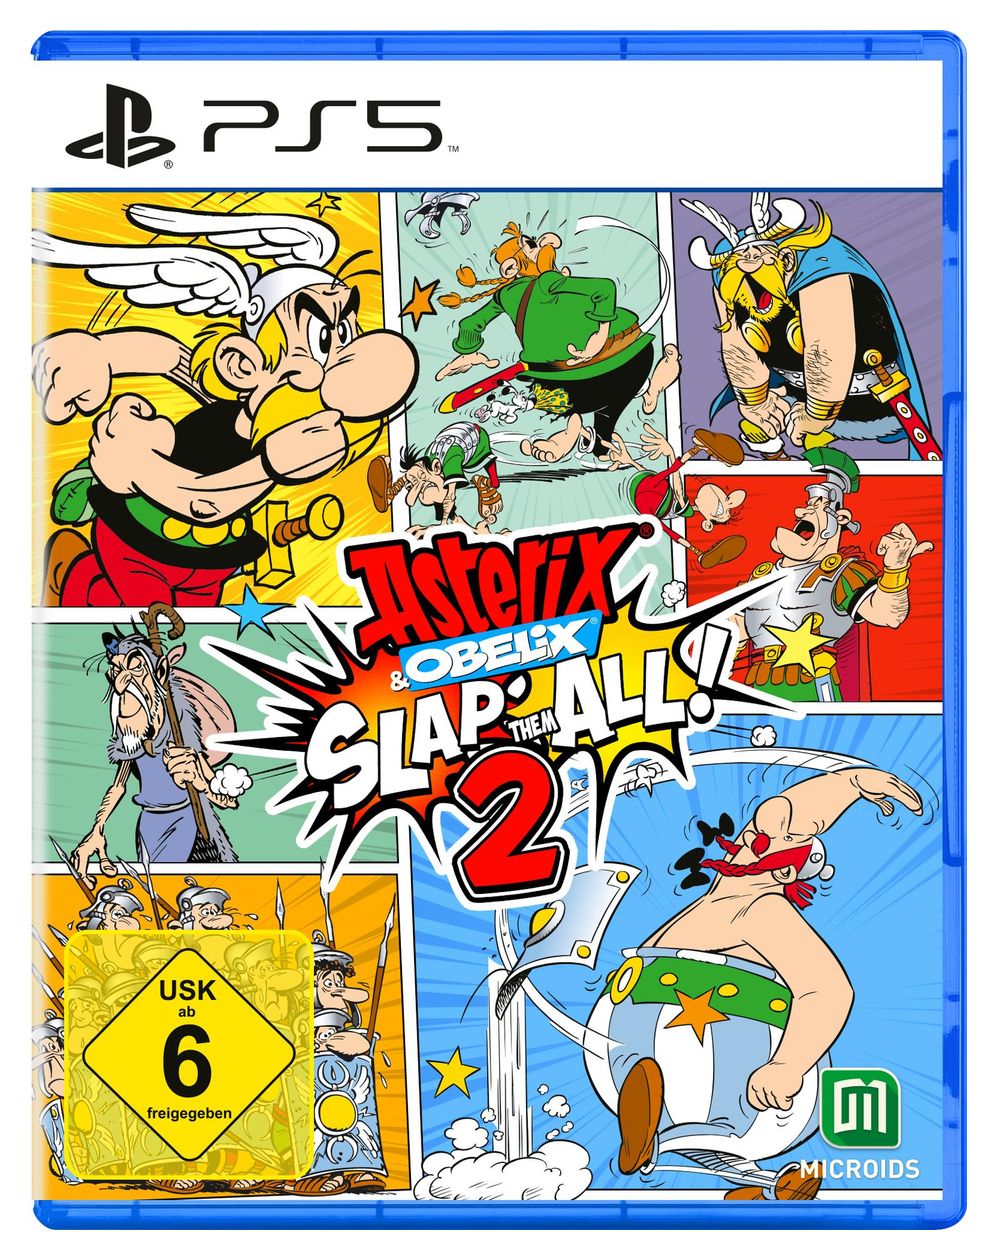 Asterix & Obelix - Slap them all! 2 (PlayStation 5) 